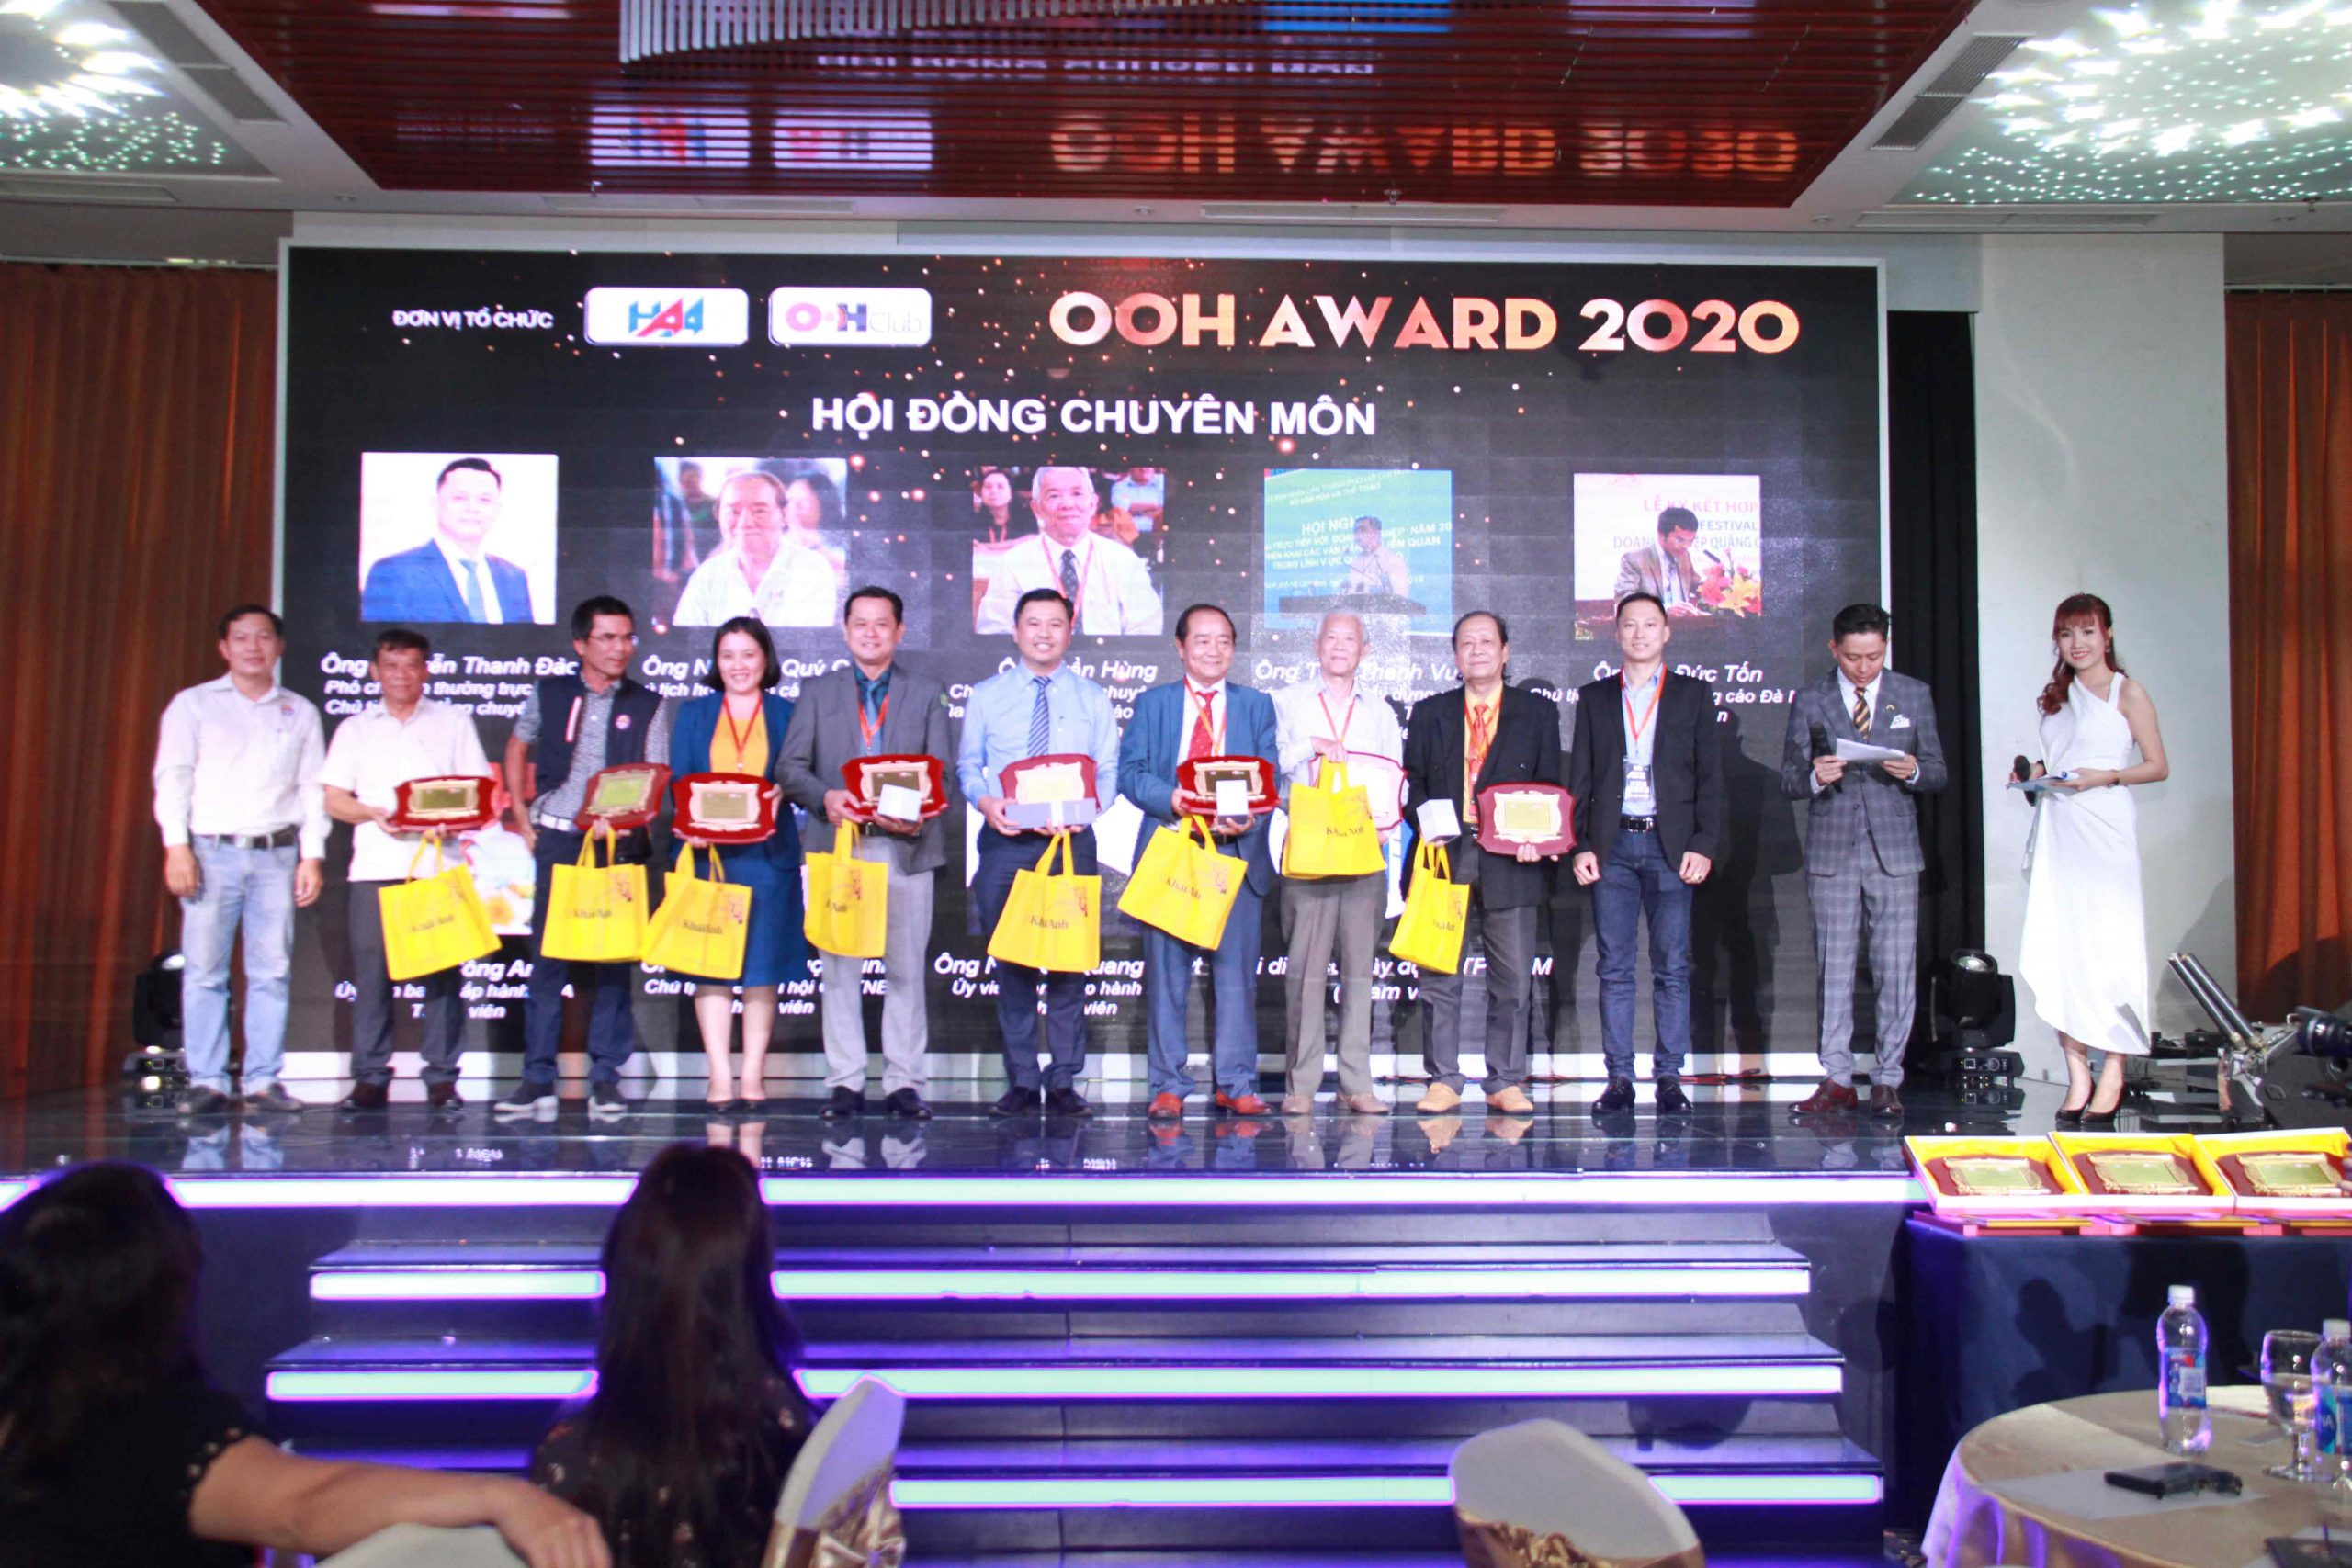 OOH Award 2020